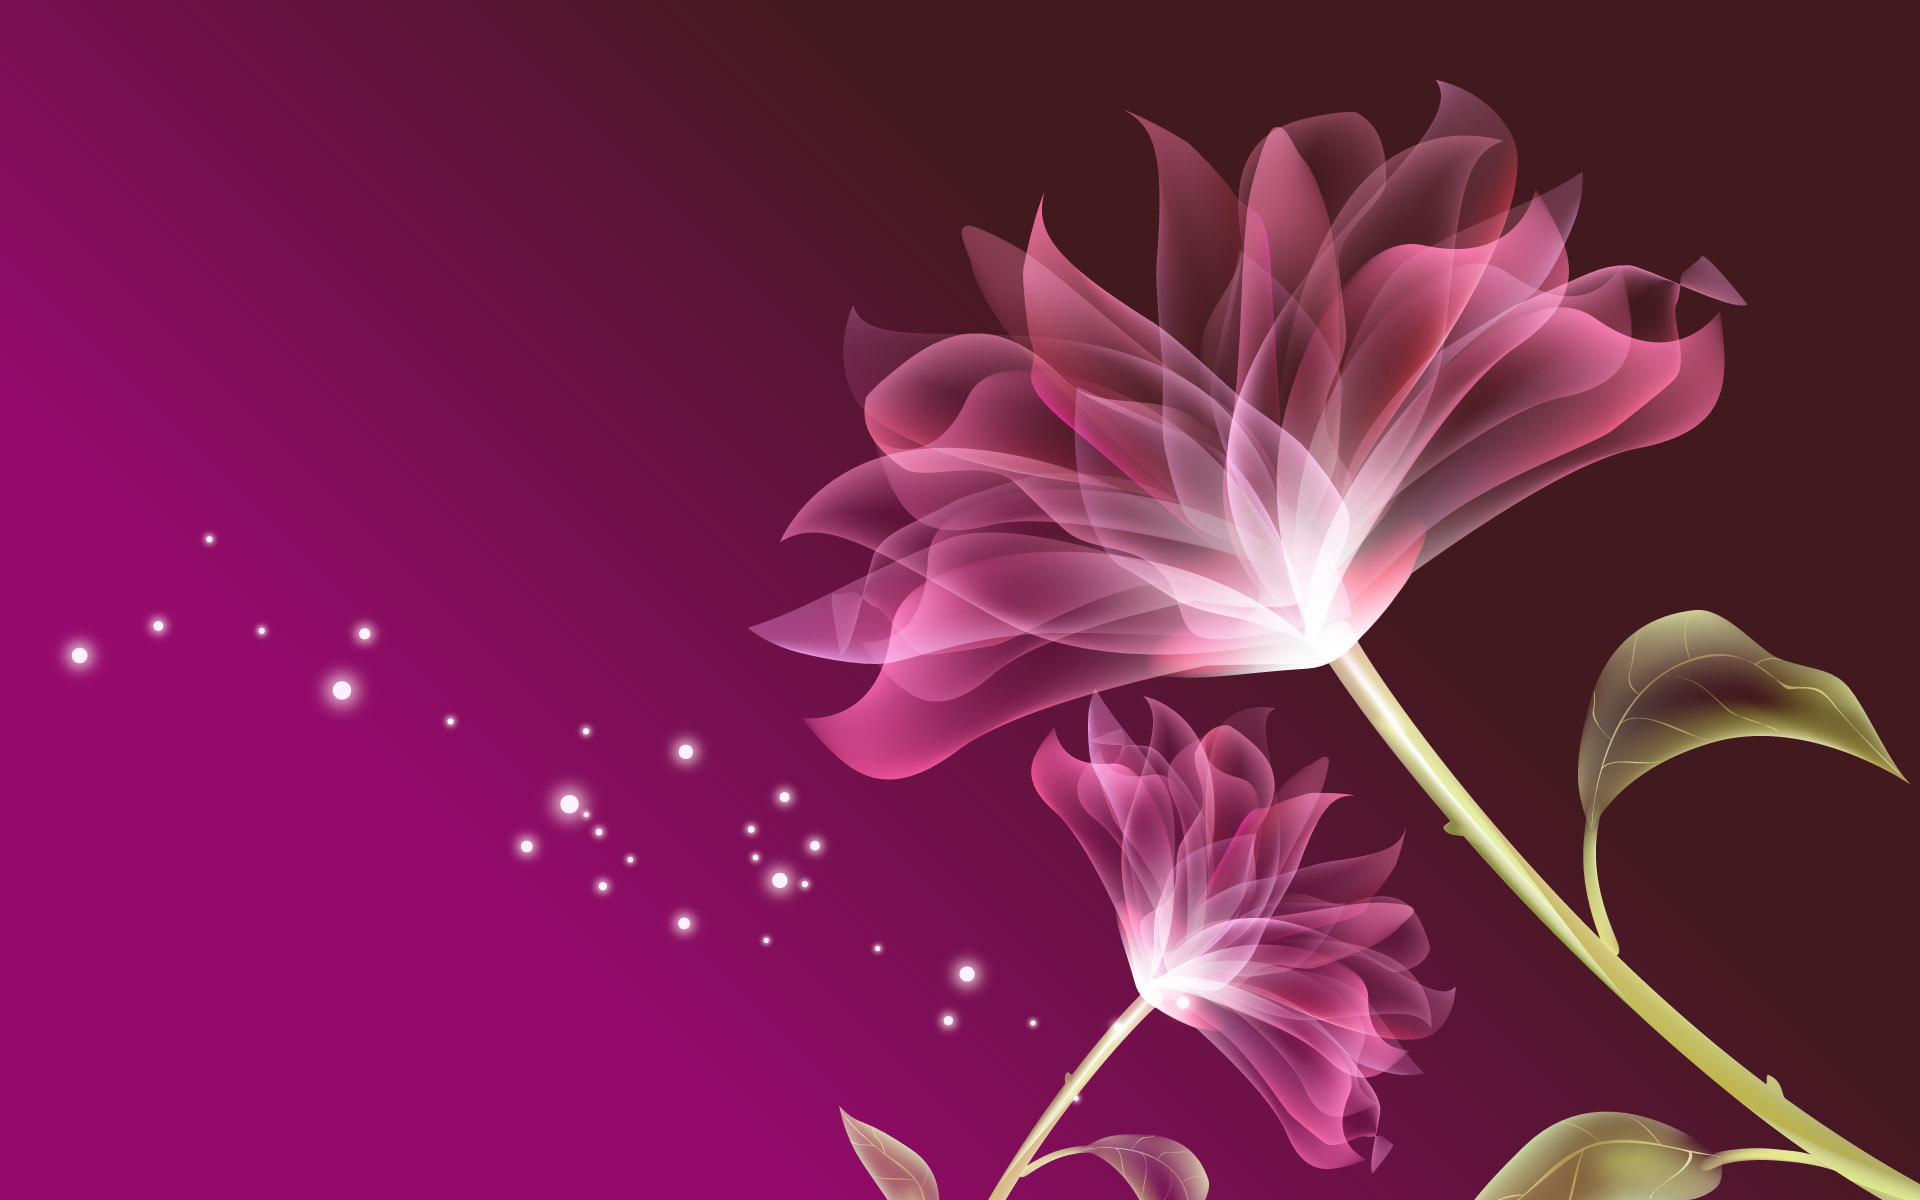 1080p Hd Flower Image - HD Wallpaper 